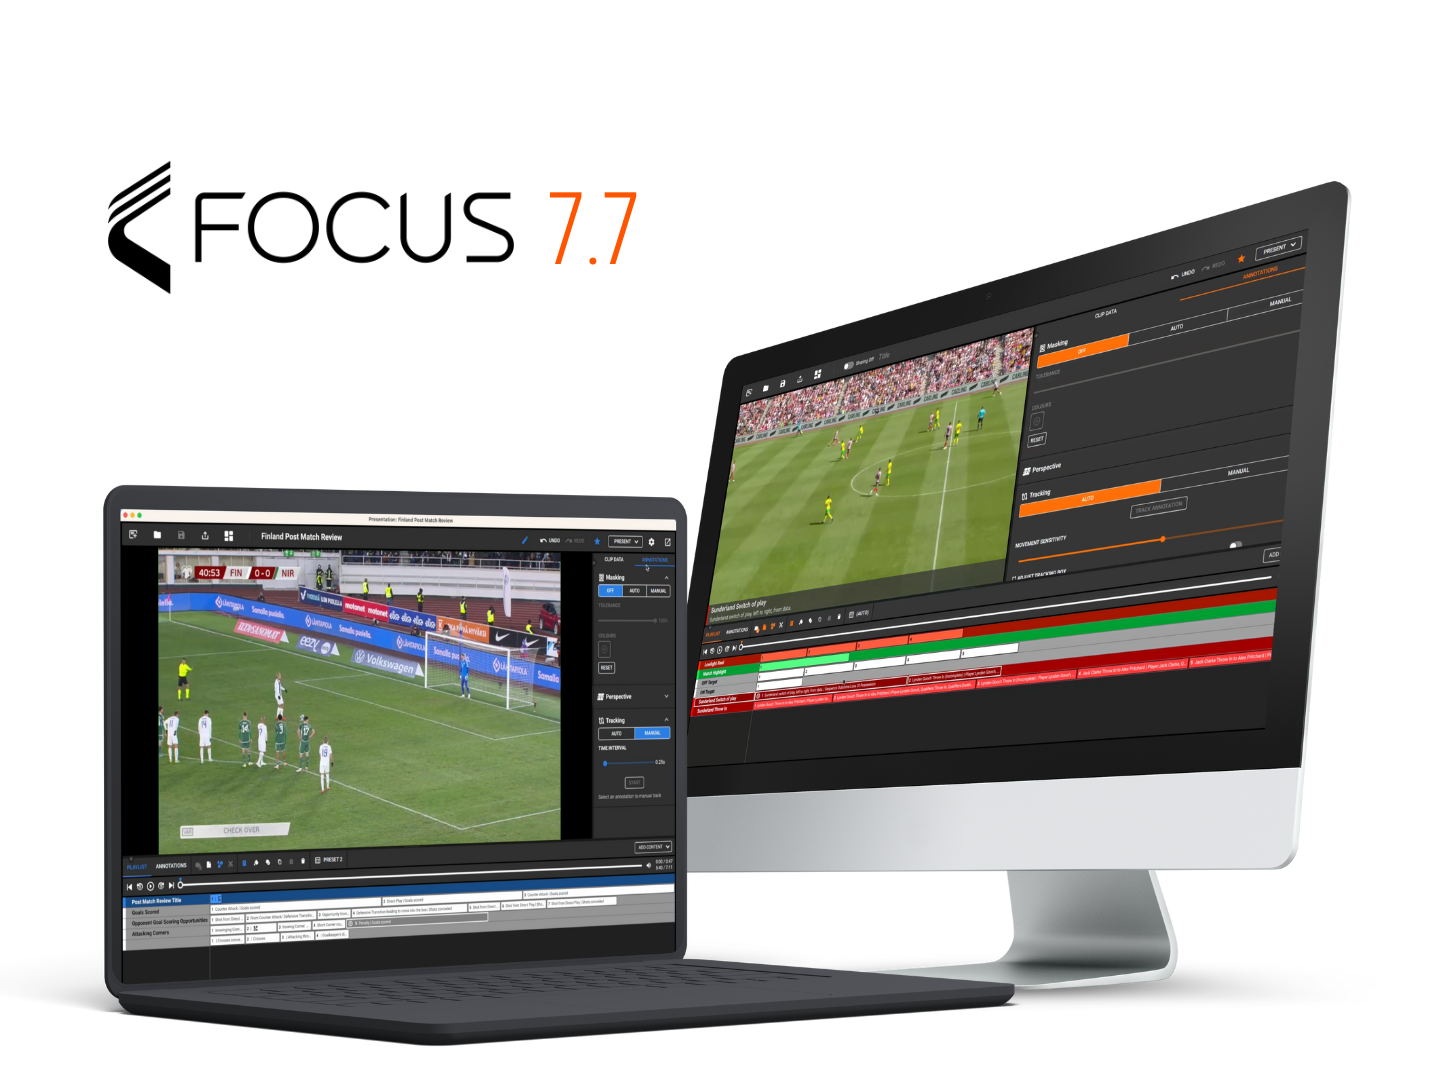 Verschiedene Geräte, darunter ein Laptop, ein Desktop und ein Smartphone, zeigen Fußballanalyseoberflächen der Focus 7.7-Plattform. Die Geräte sind in einem kreisförmigen Muster mit orangefarbenem Hintergrund angeordnet.